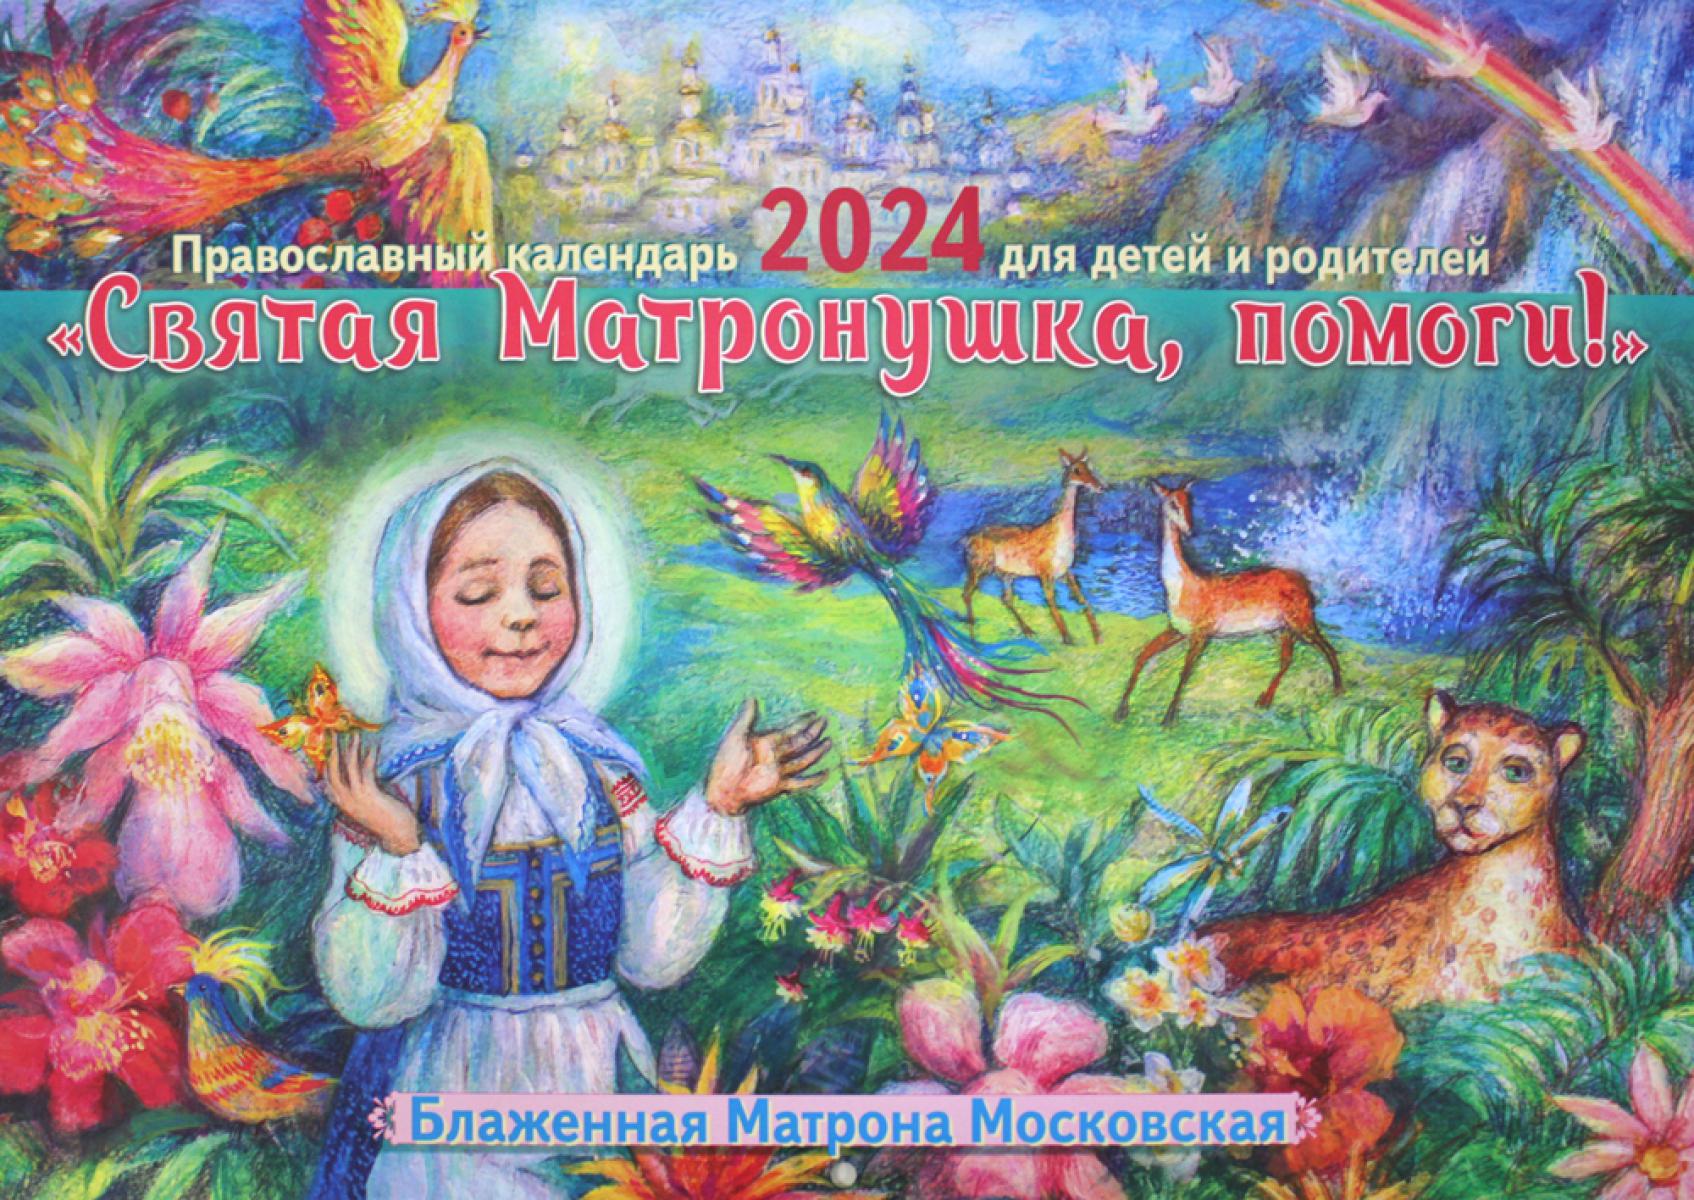 Святая Матронушка, помоги!: Православный календарь 2024 для детей и родителей (перекидной)